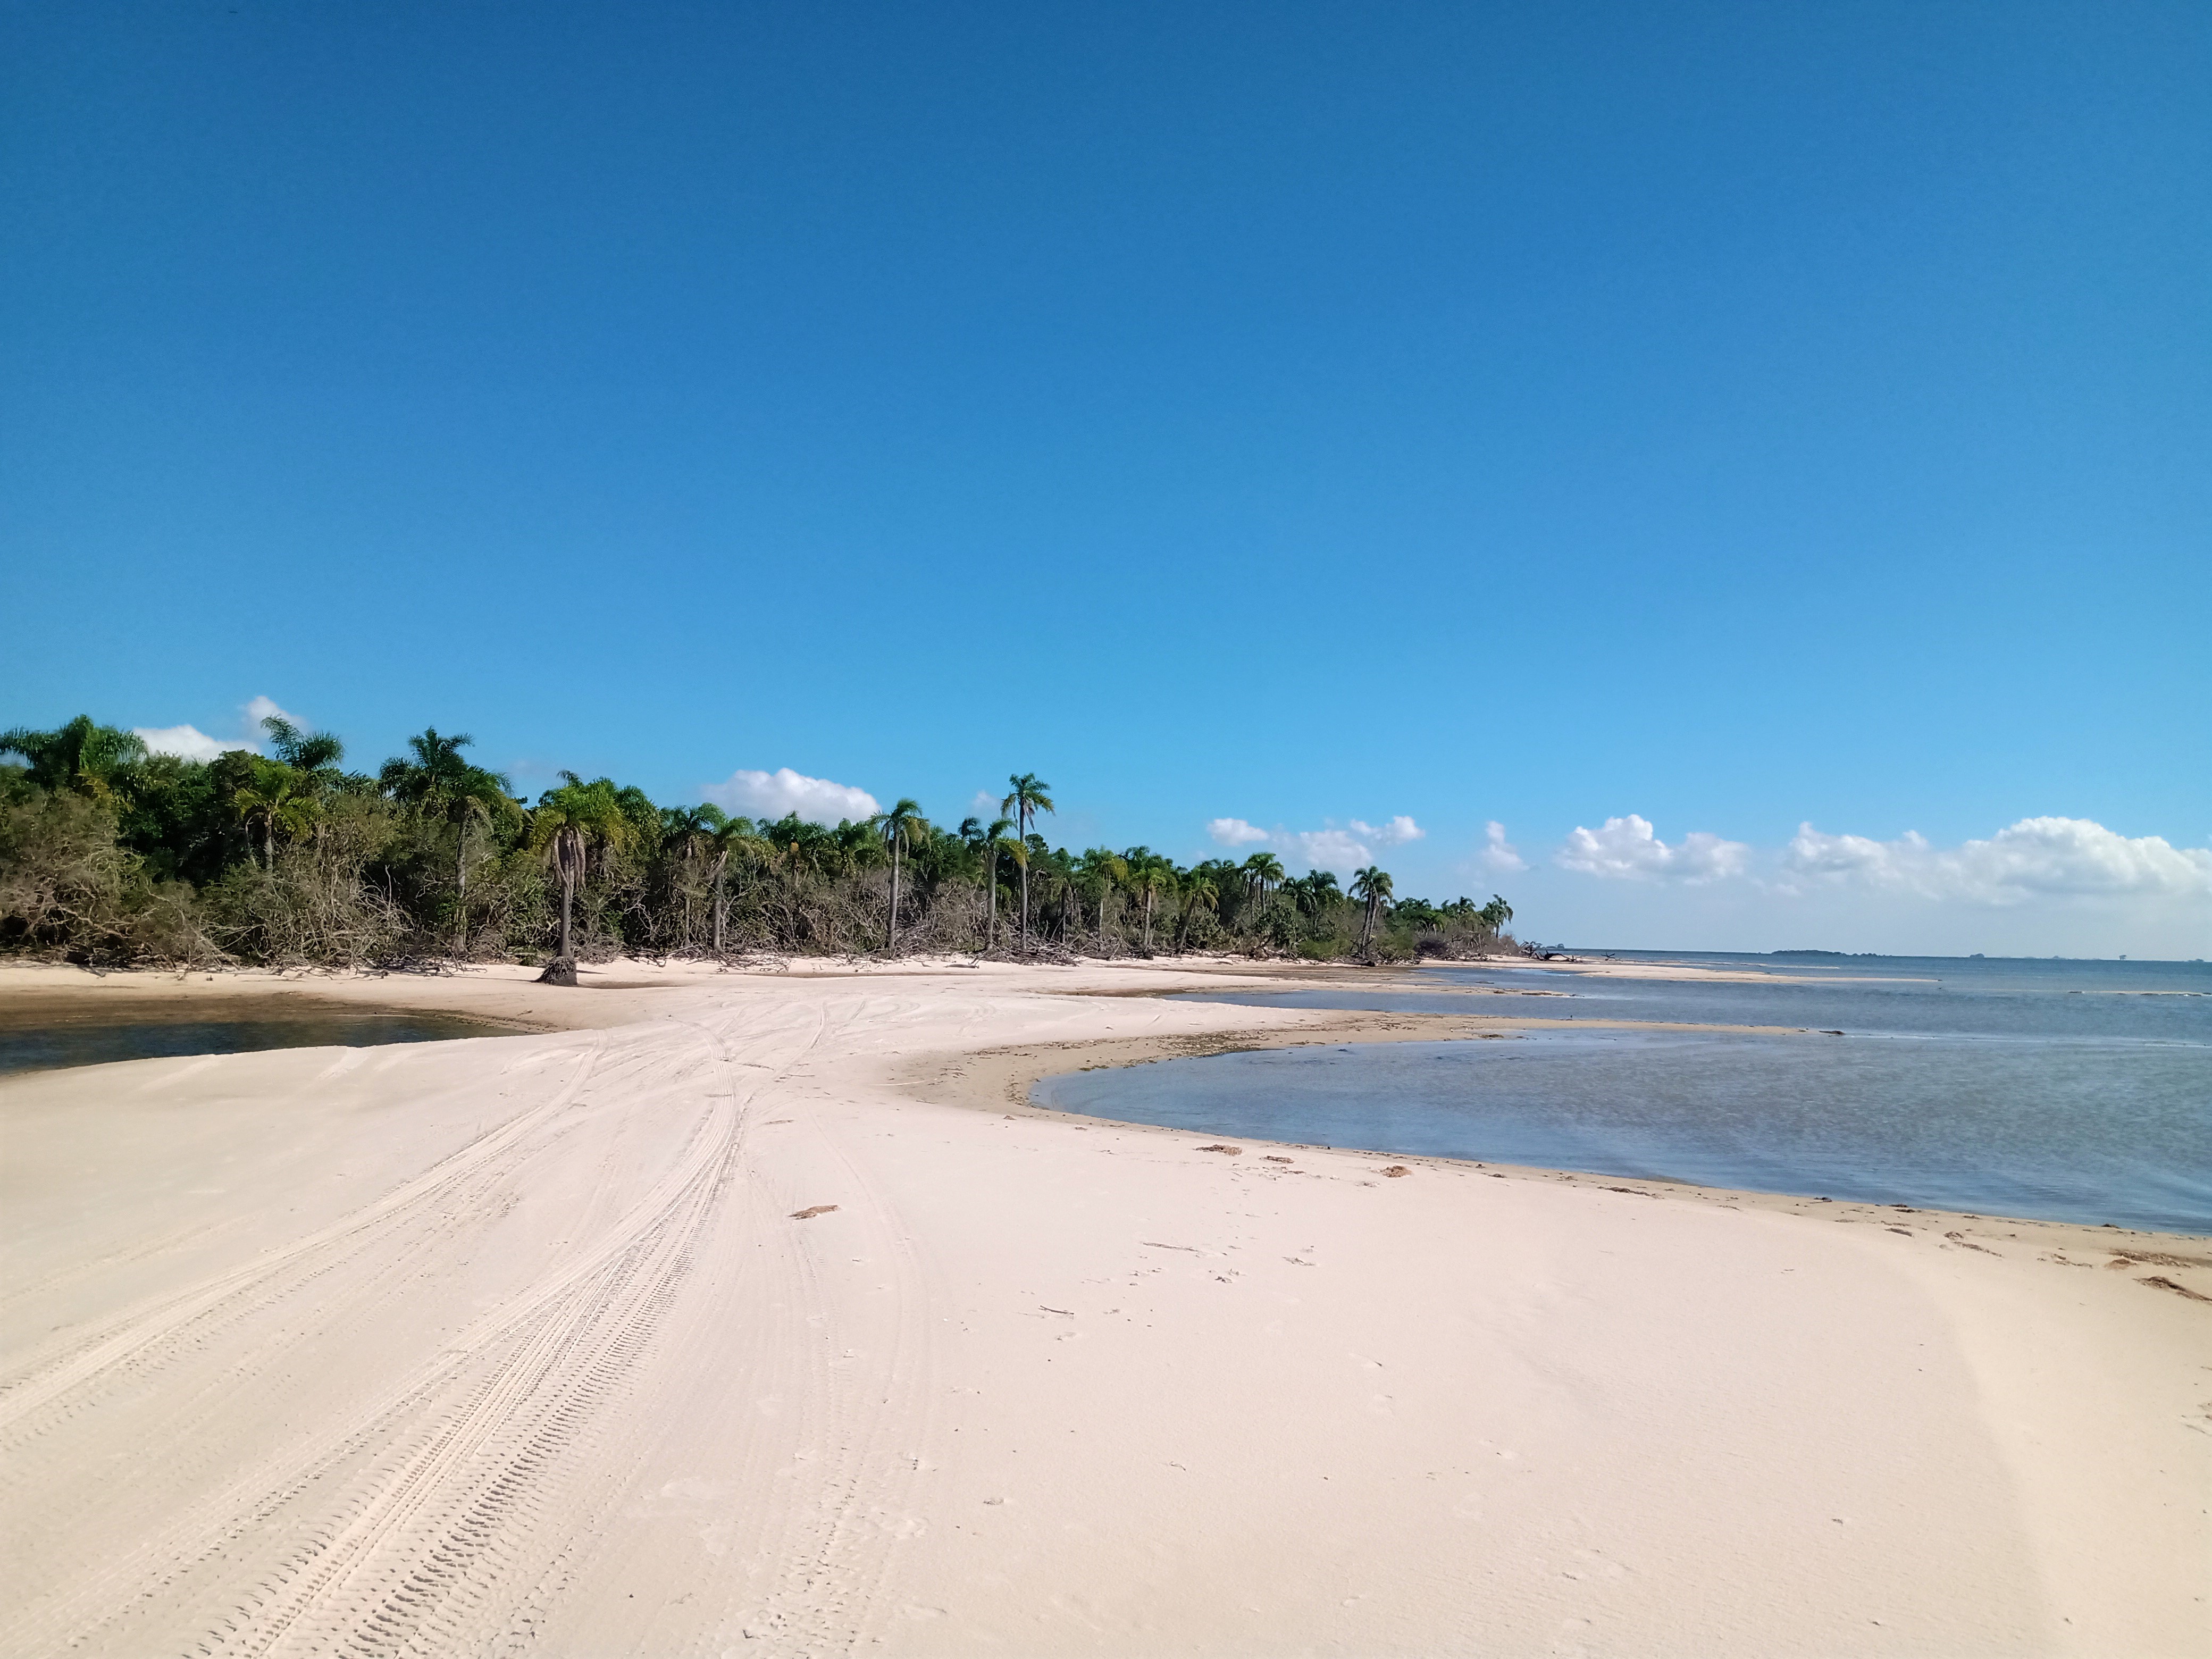 faixa de areia em frente à lagoa e coqueiros ao fundo